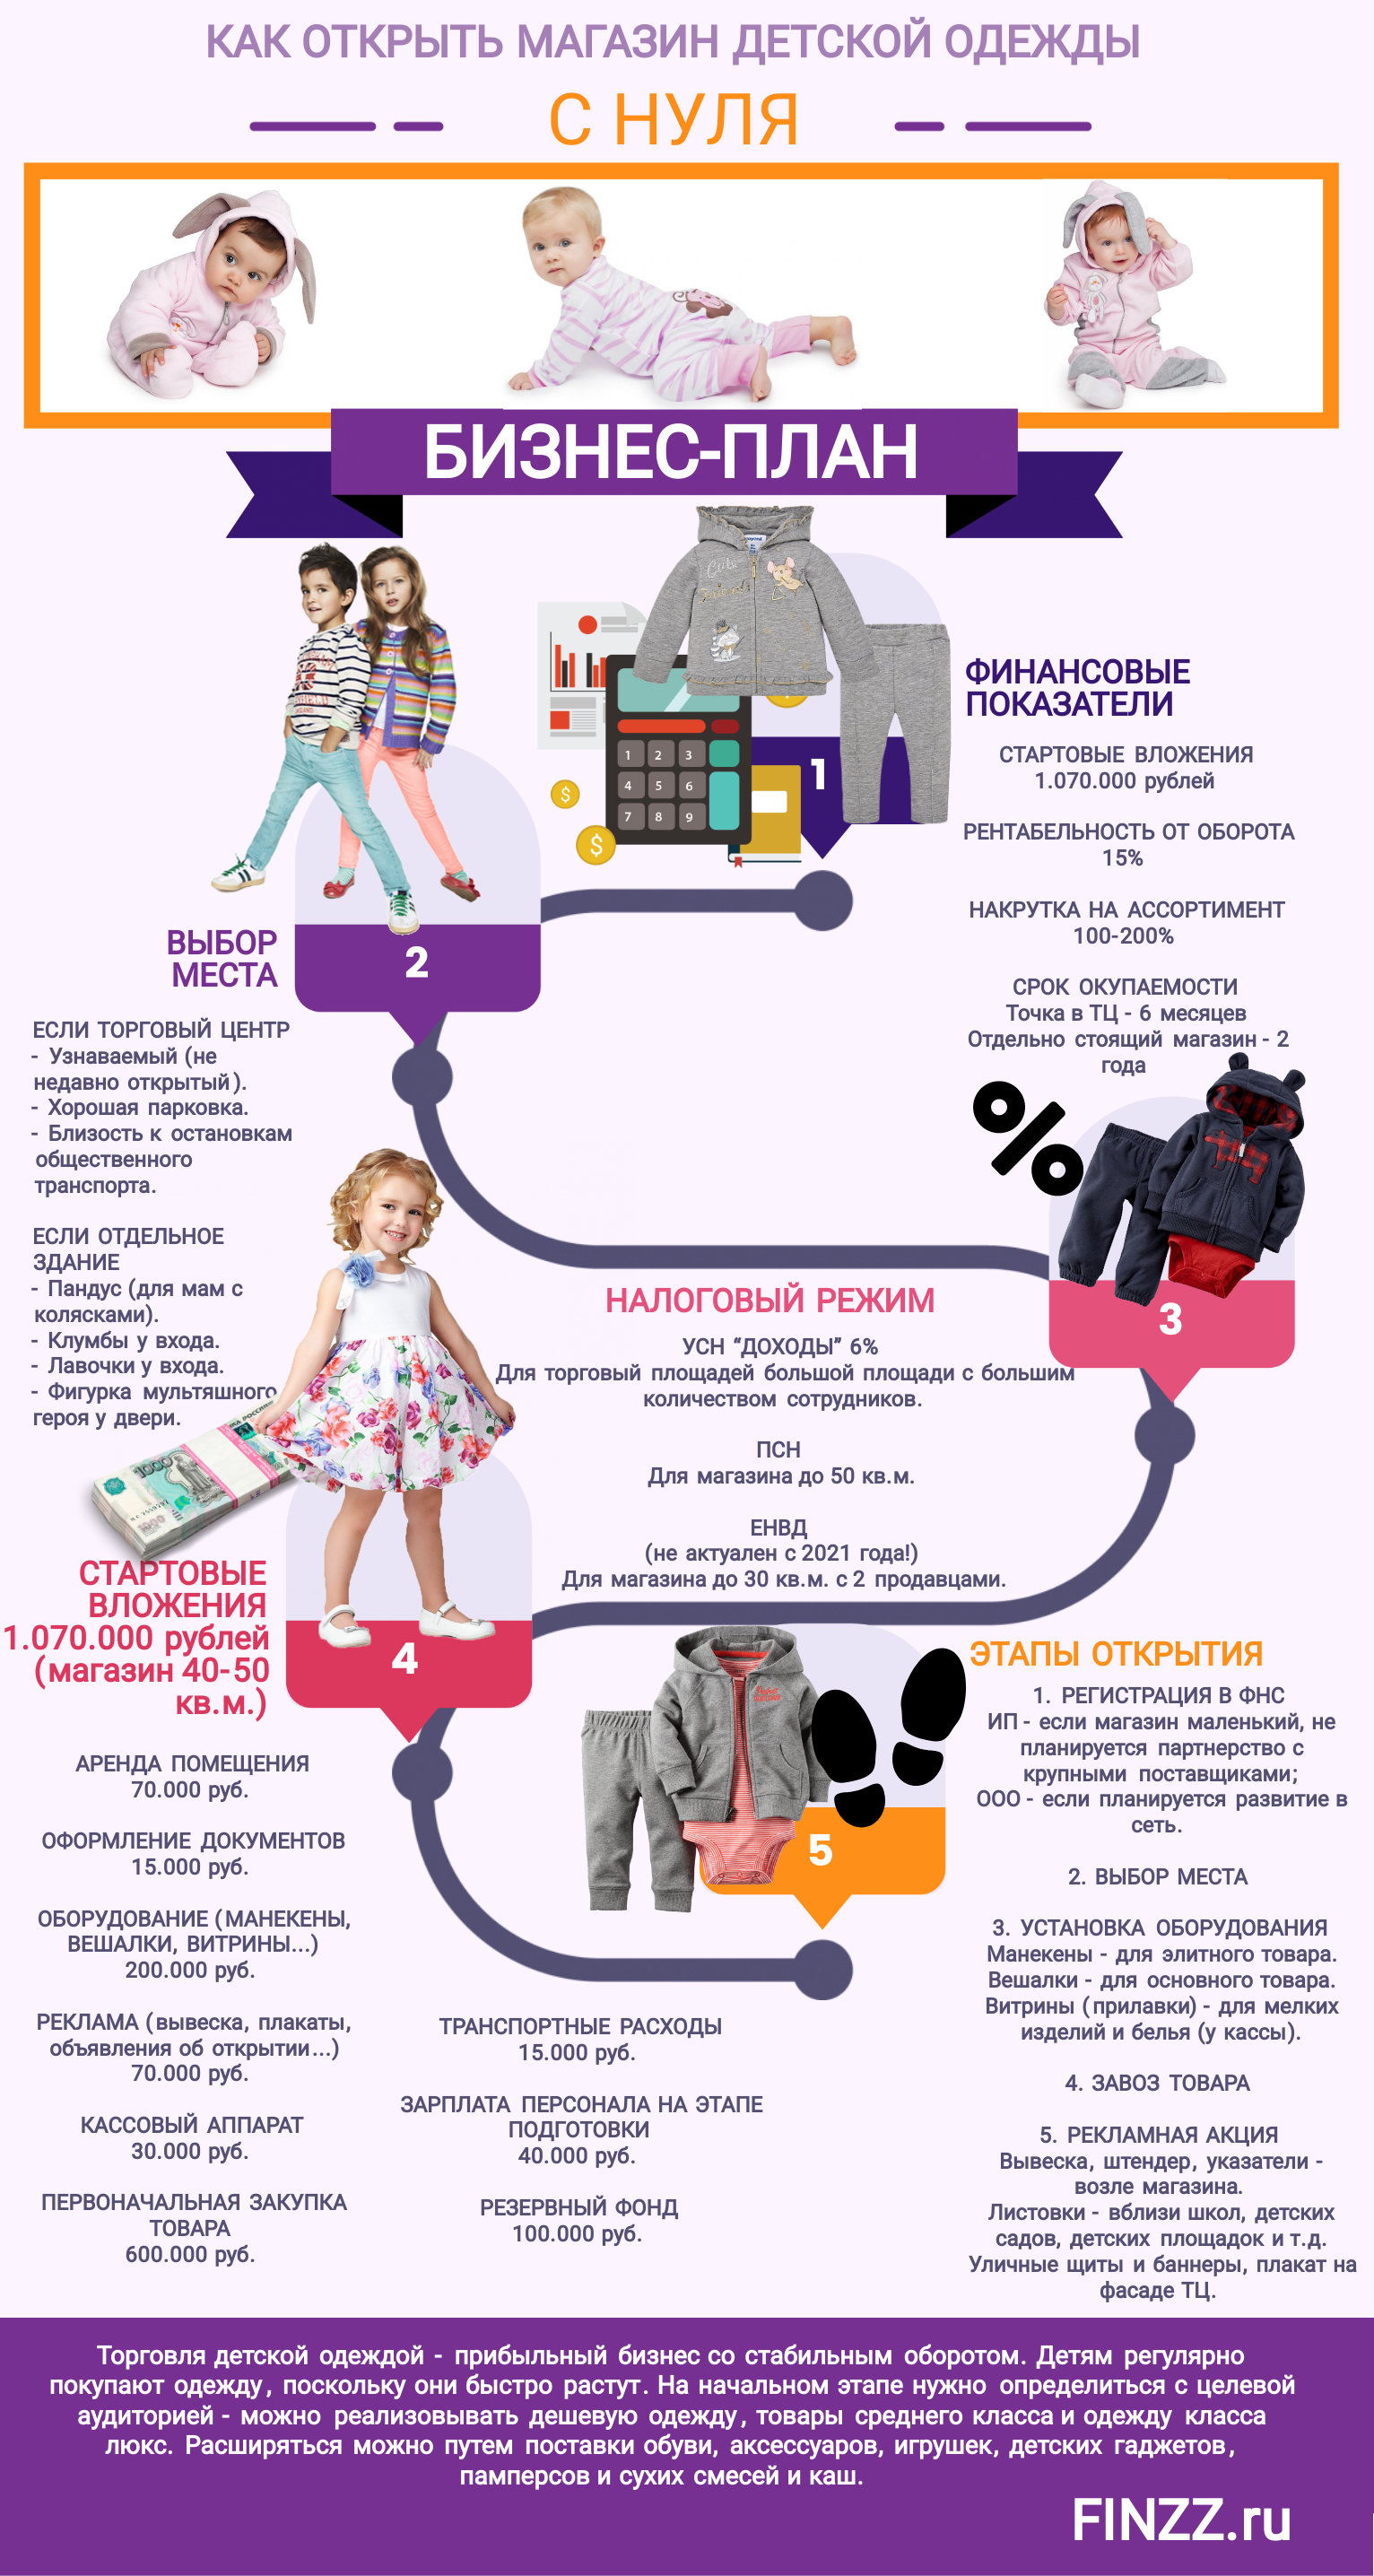 Как открыть магазин детской одежды с нуля и без опыта: бизнес план с расчетами